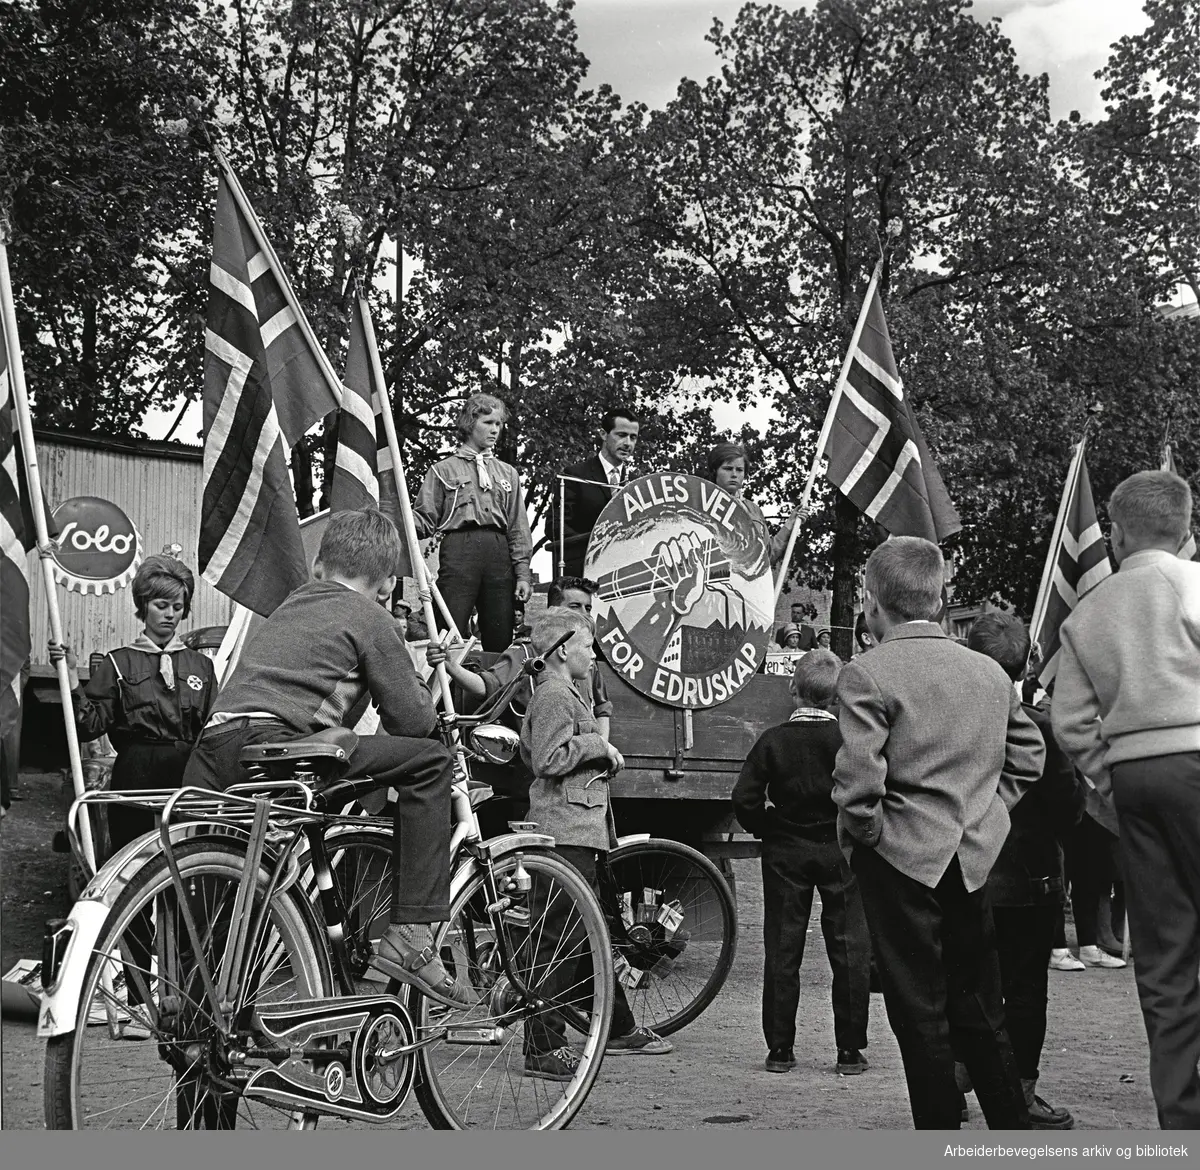 Dagen for Folkeedruskap. Emblem med teksten: Alles vel - for edruskap. Juni 1962